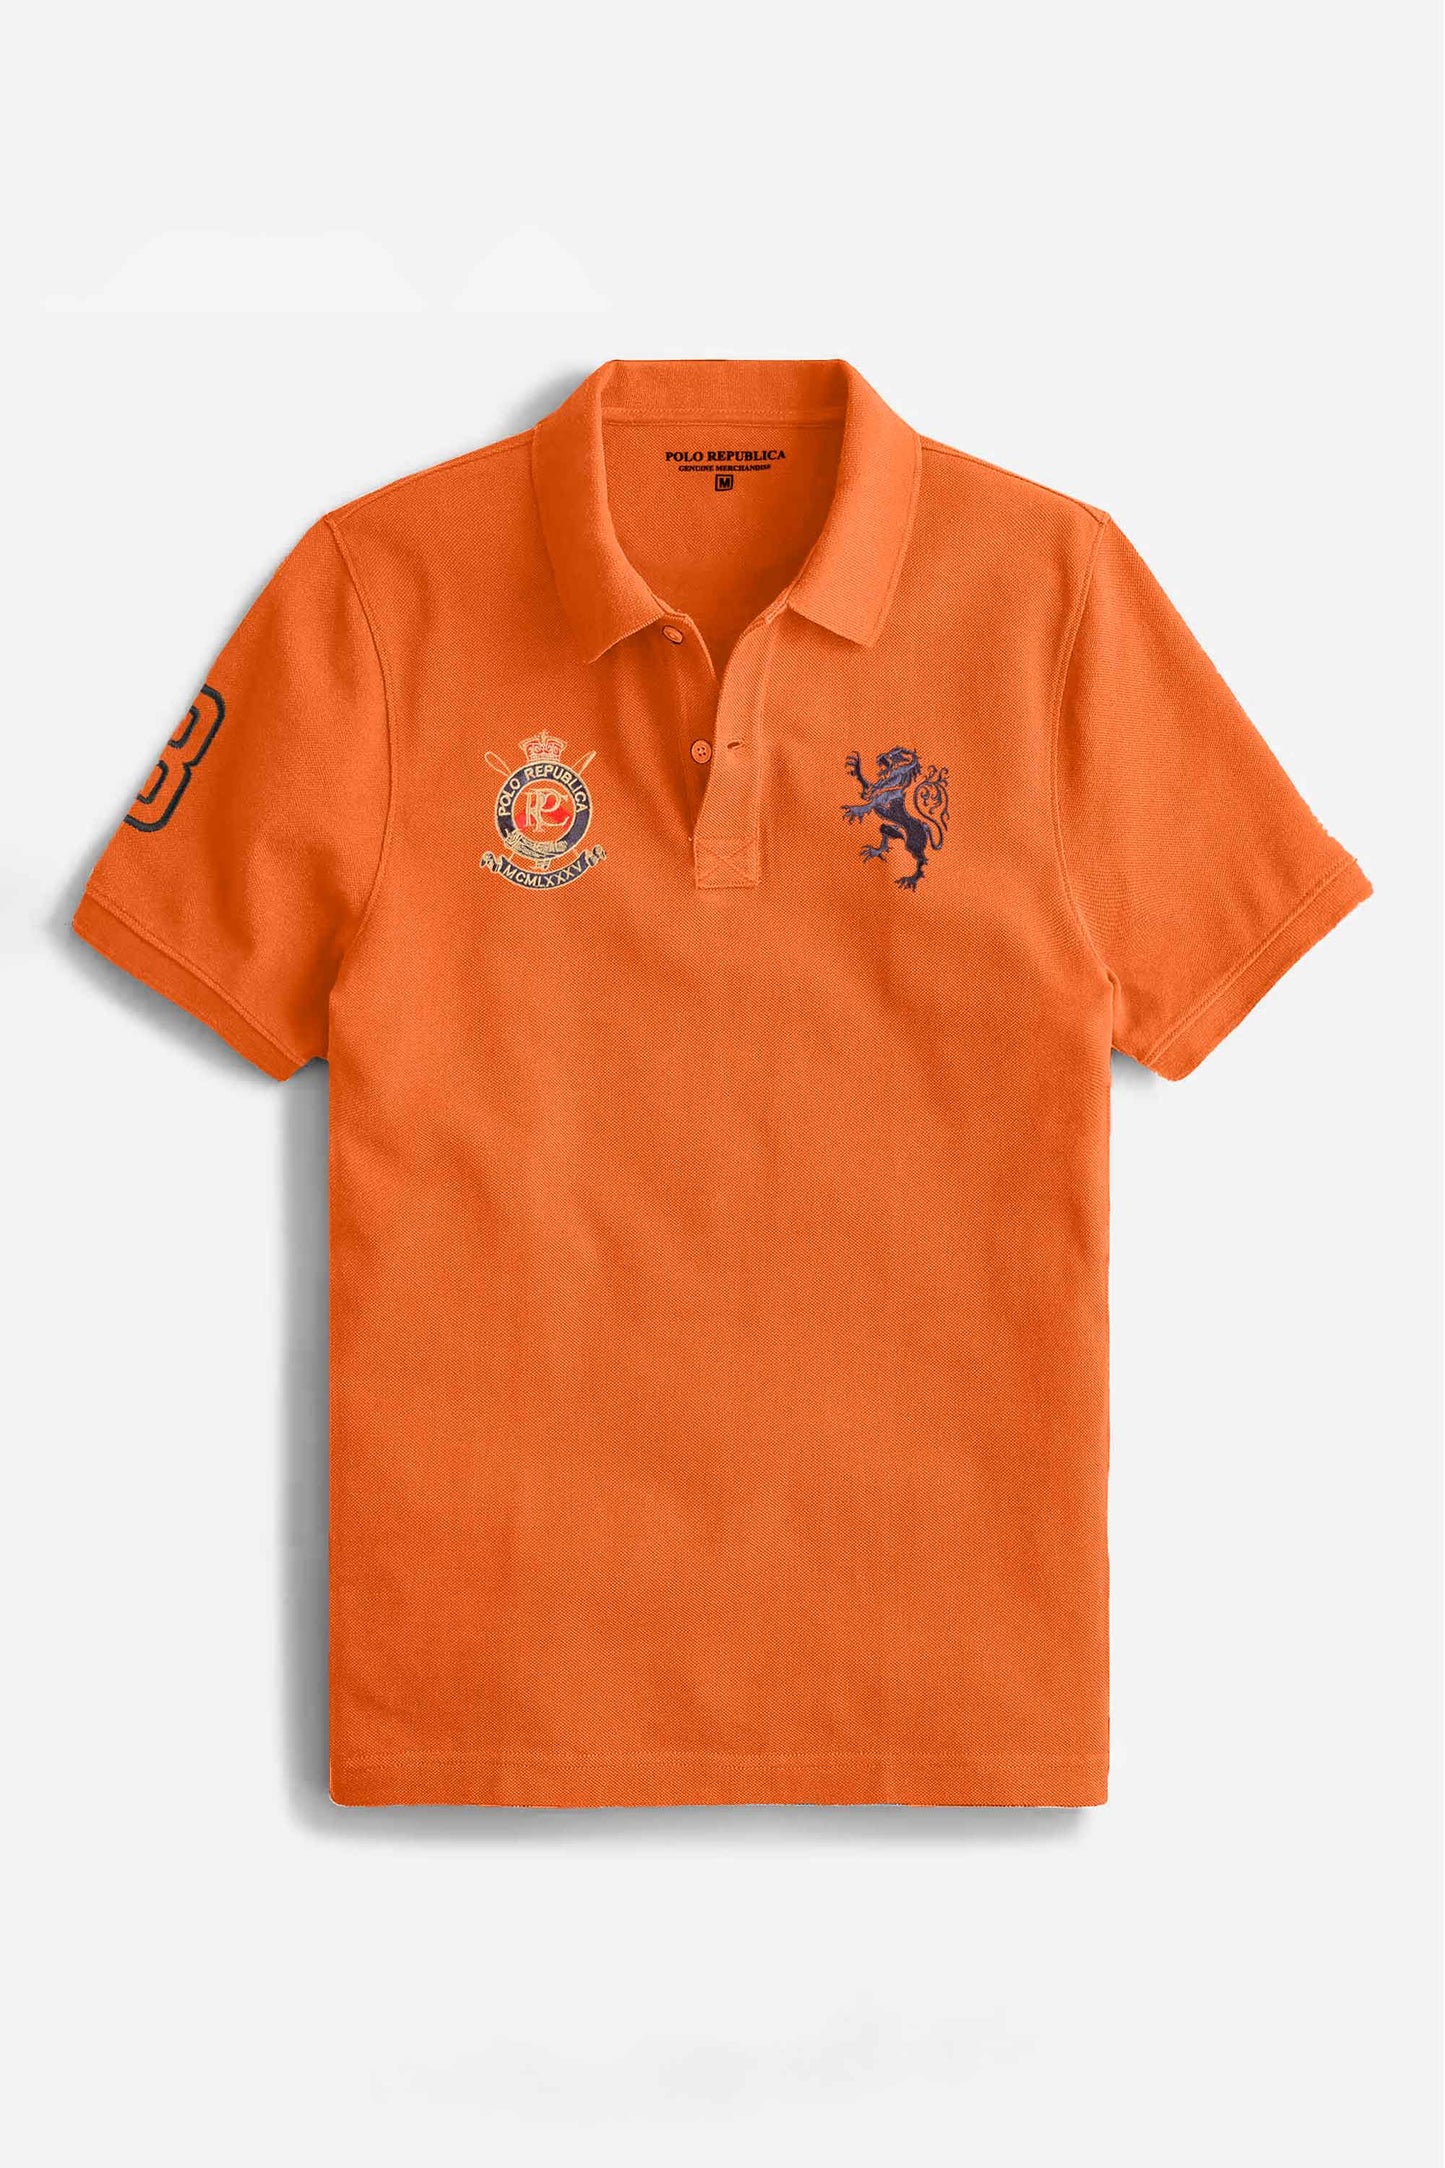 Polo Republica Men's Lion PR Crest & 8 Embroidered Short Sleeve Polo Shirt Men's Polo Shirt Polo Republica 